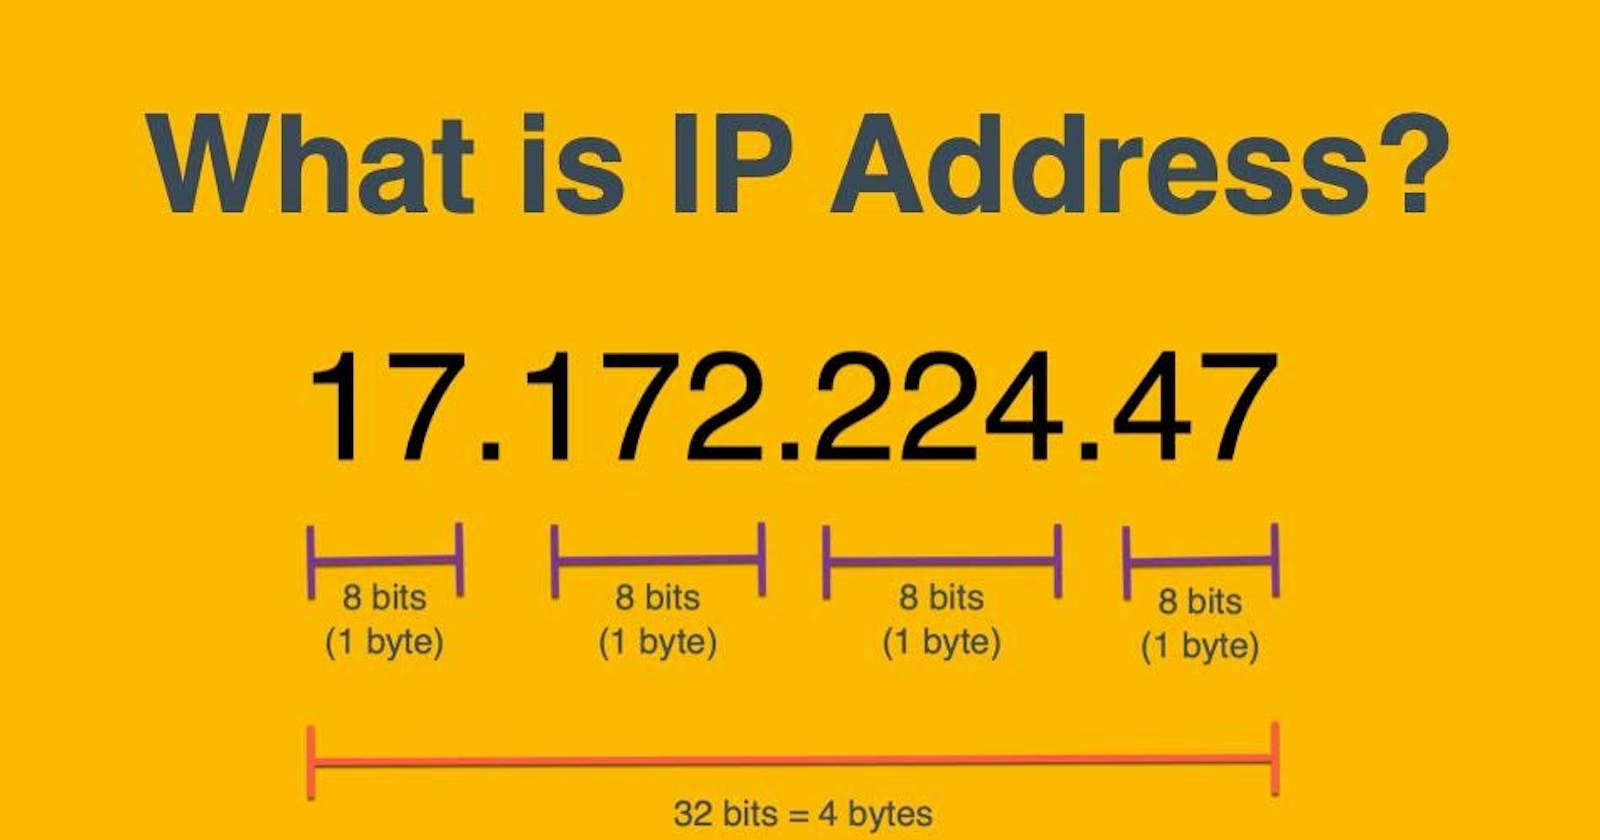 আইপি অ্যাড্রেস (IP Address) কি? IP Address কিভাবে কাজ করে?